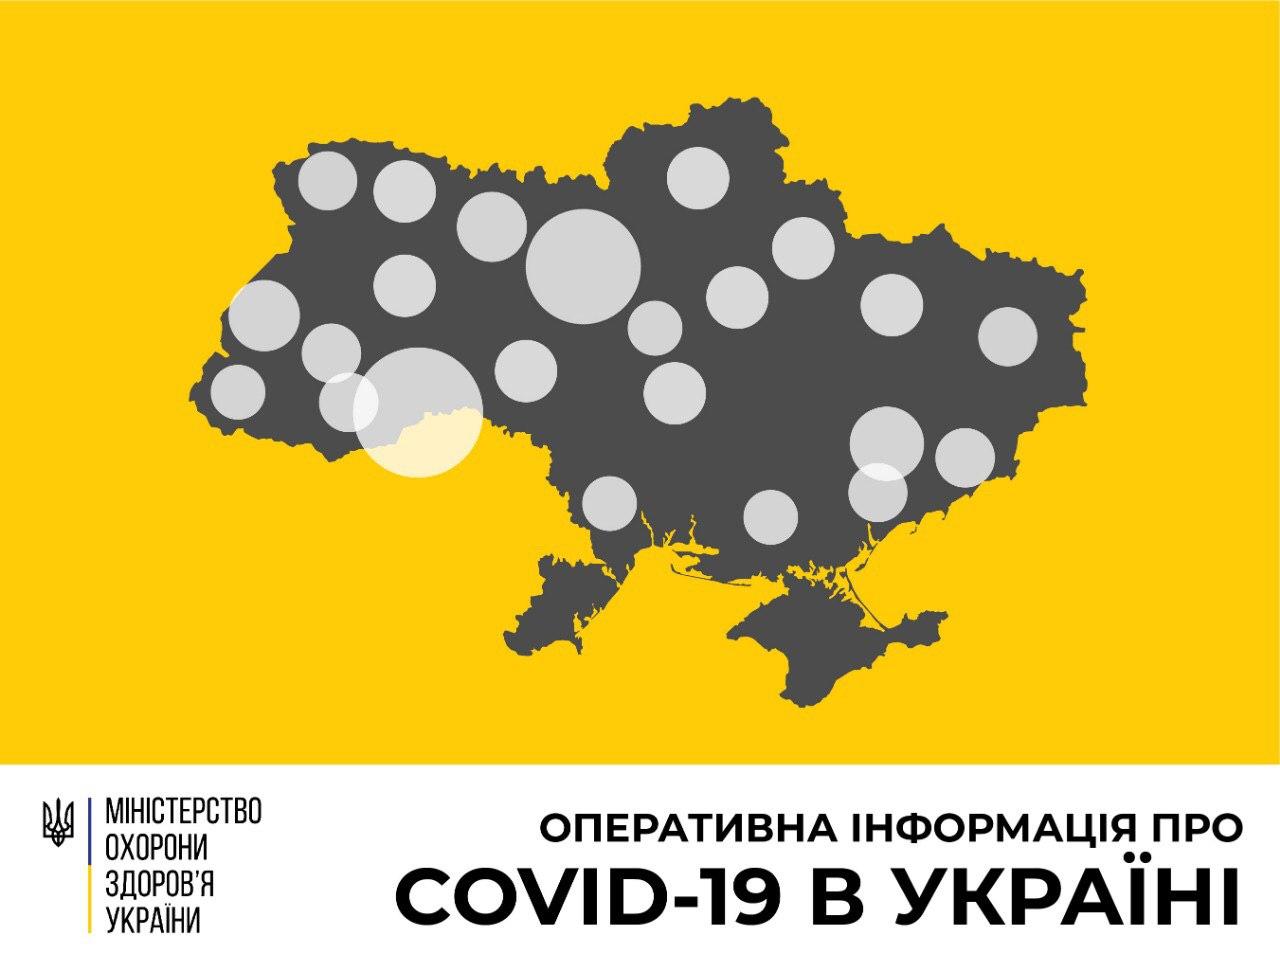 В Україні зафіксовано 942 випадки коронавірусної хвороби COVID-19 - МОЗ